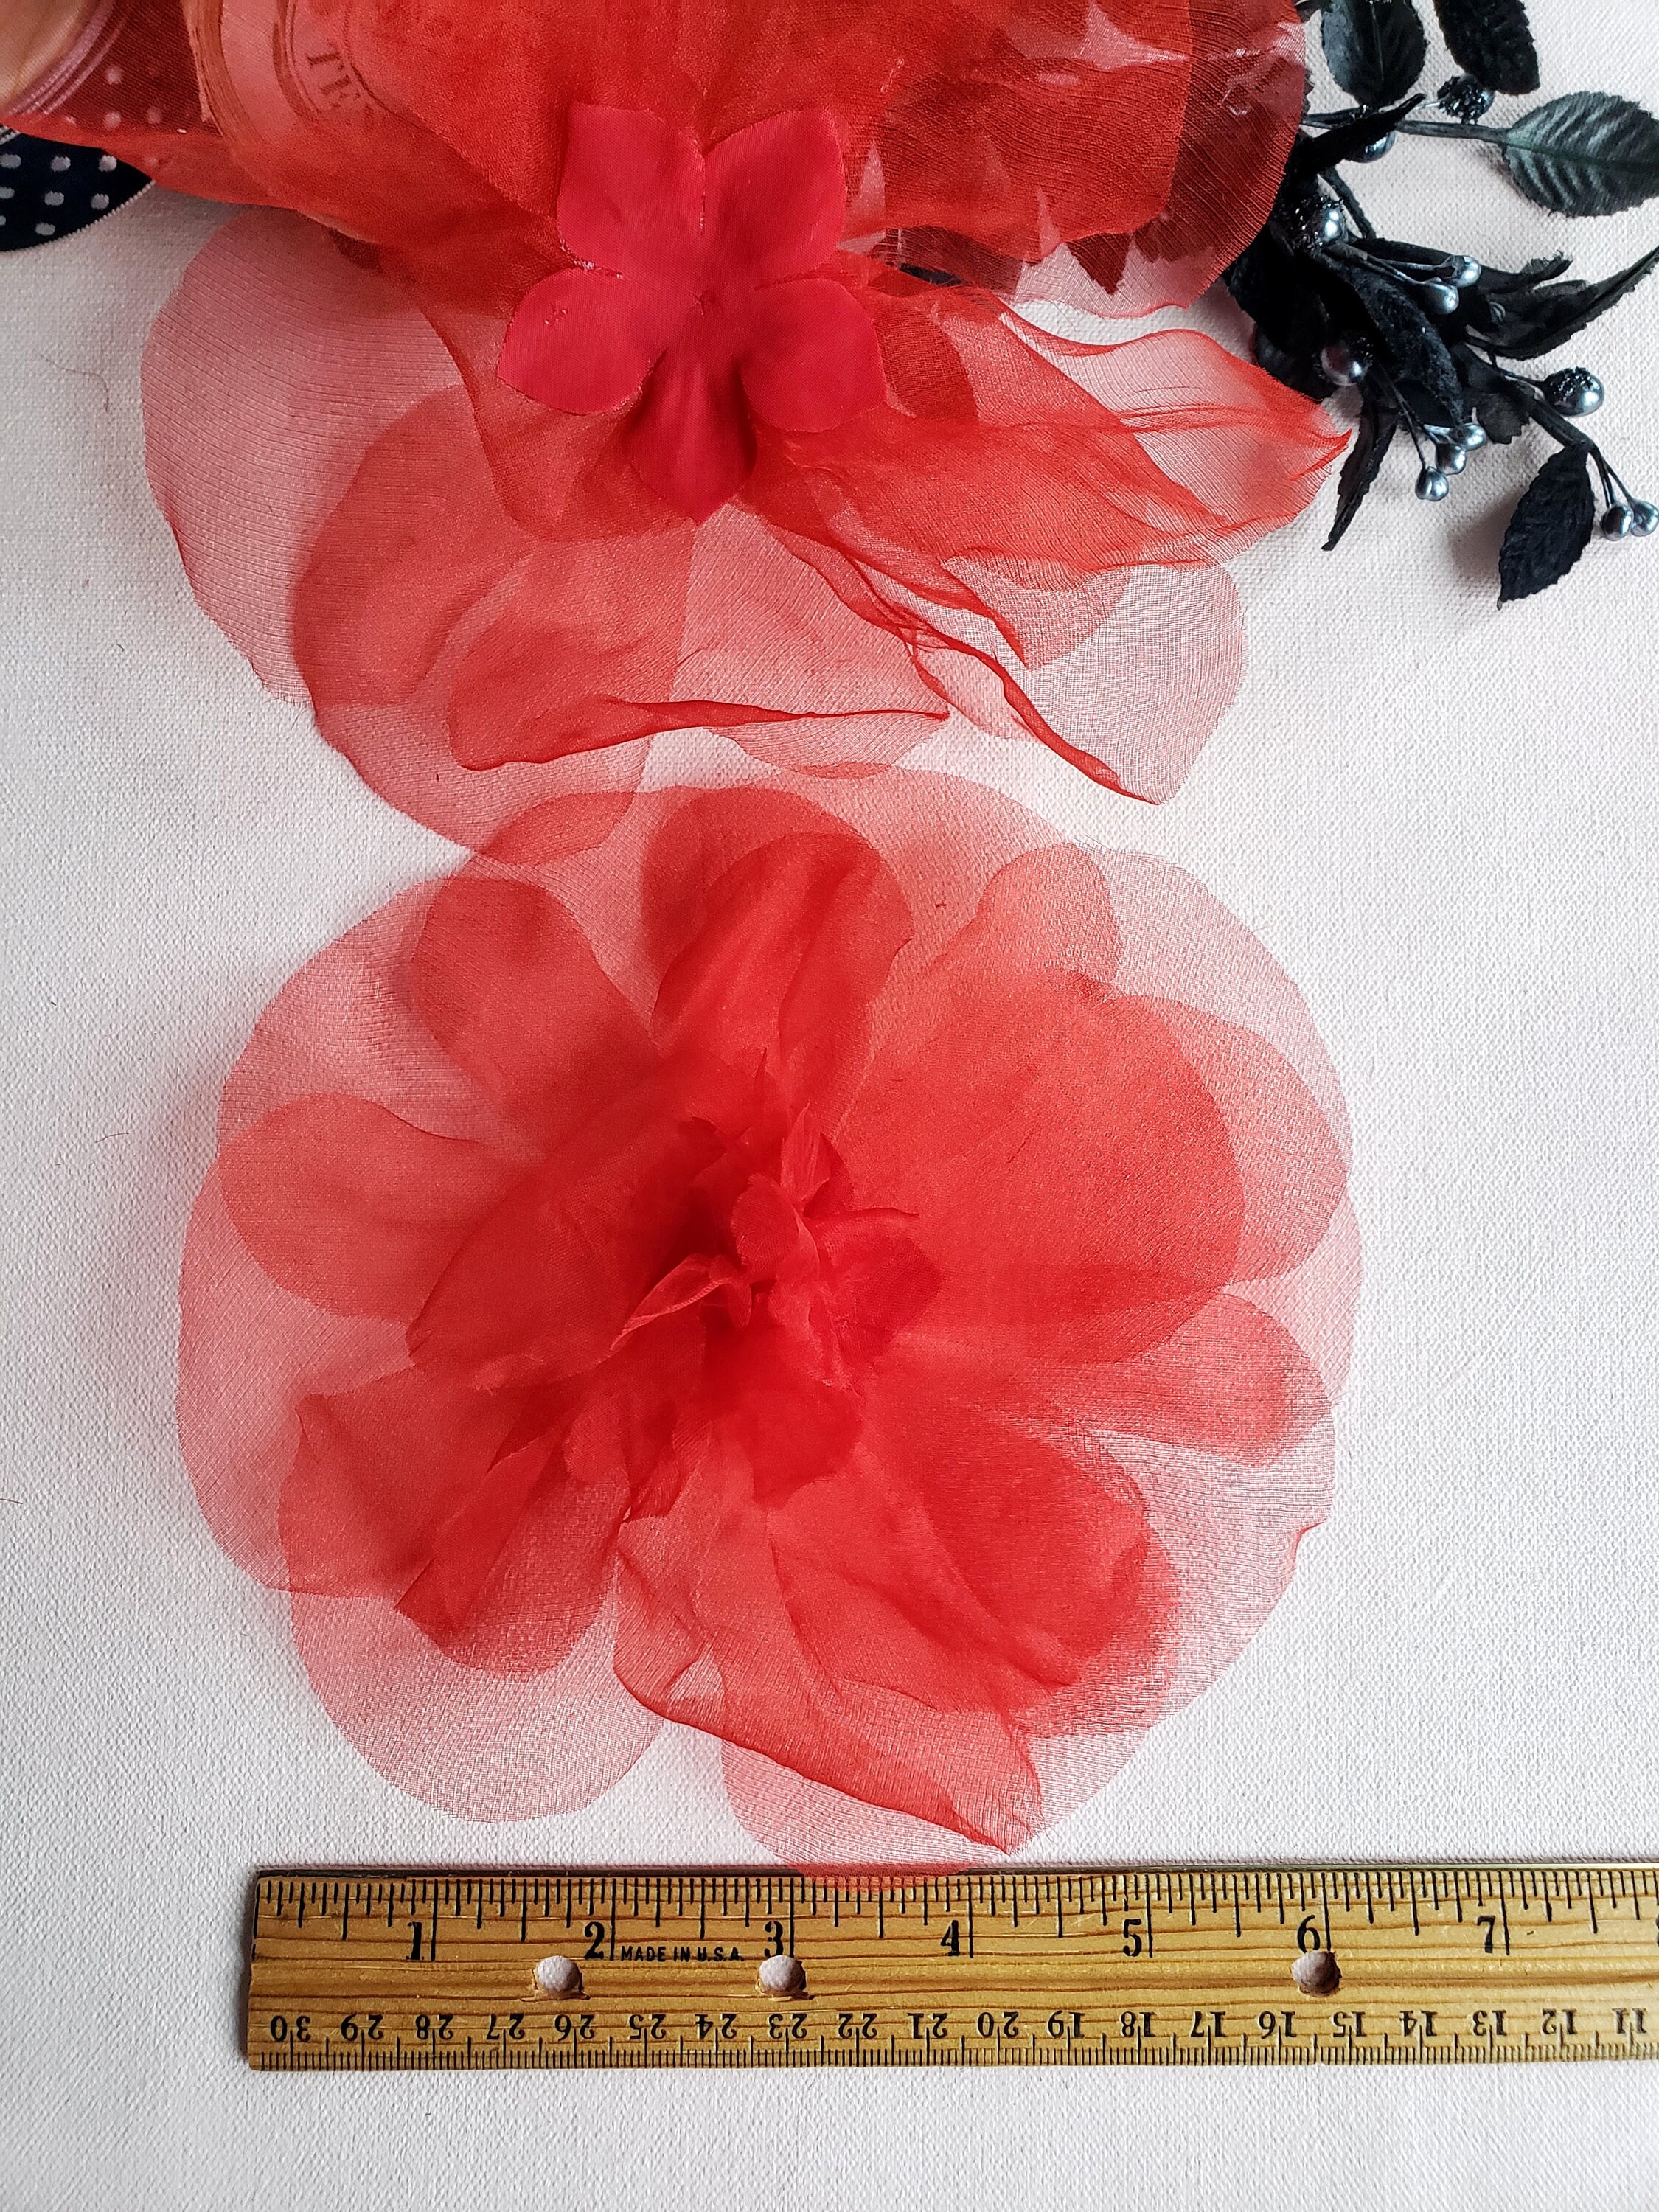 Millinery Flower Burgundy 5" Filmy Silk Organza Hat Wedding or Hair KM4 B 